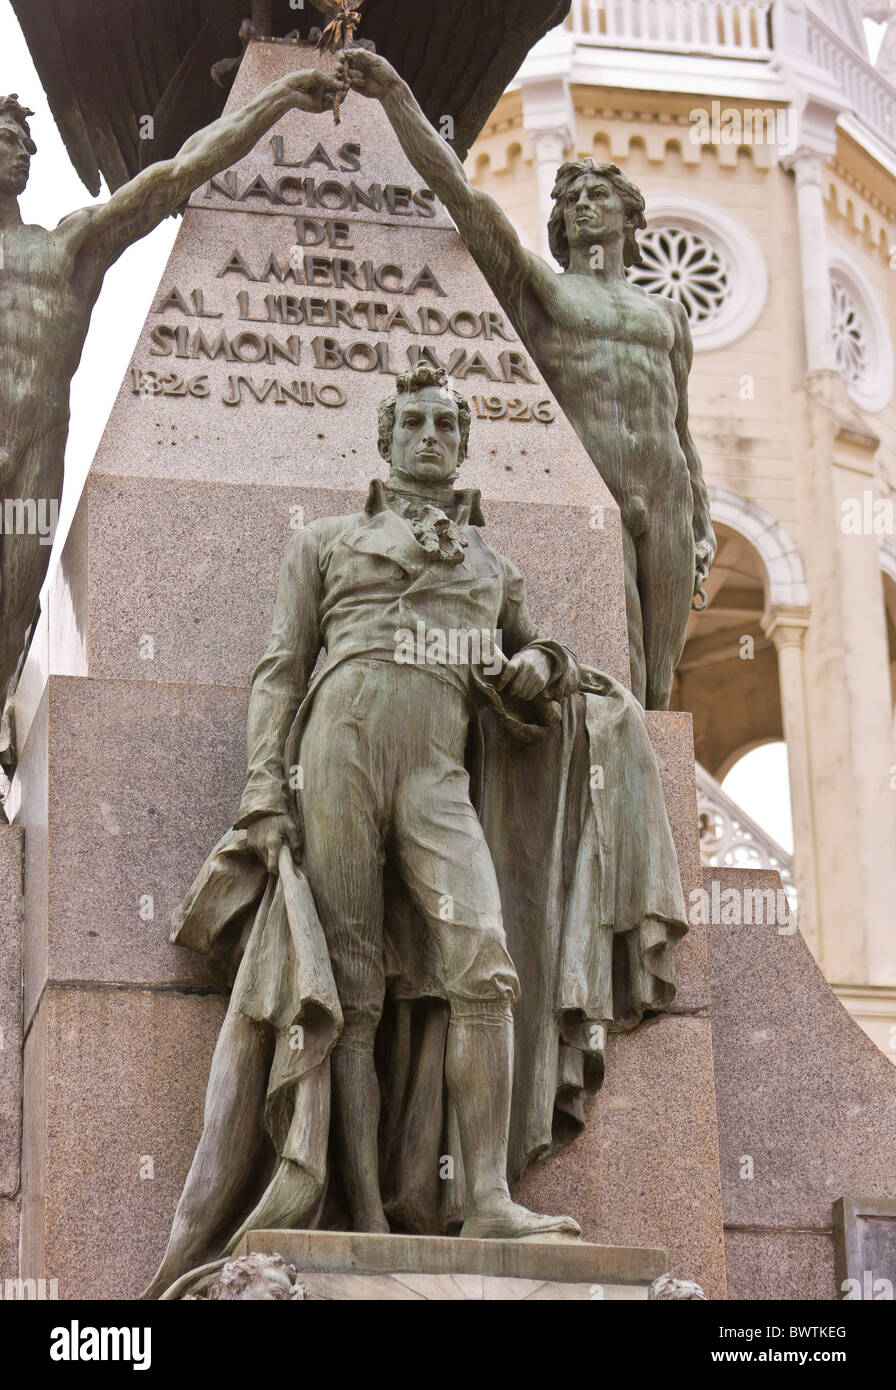 PANAMA CITY, PANAMA - Statue of SImon Bolivar, Plaza Bolivar, in Casco Viejo, historic city center. Stock Photo